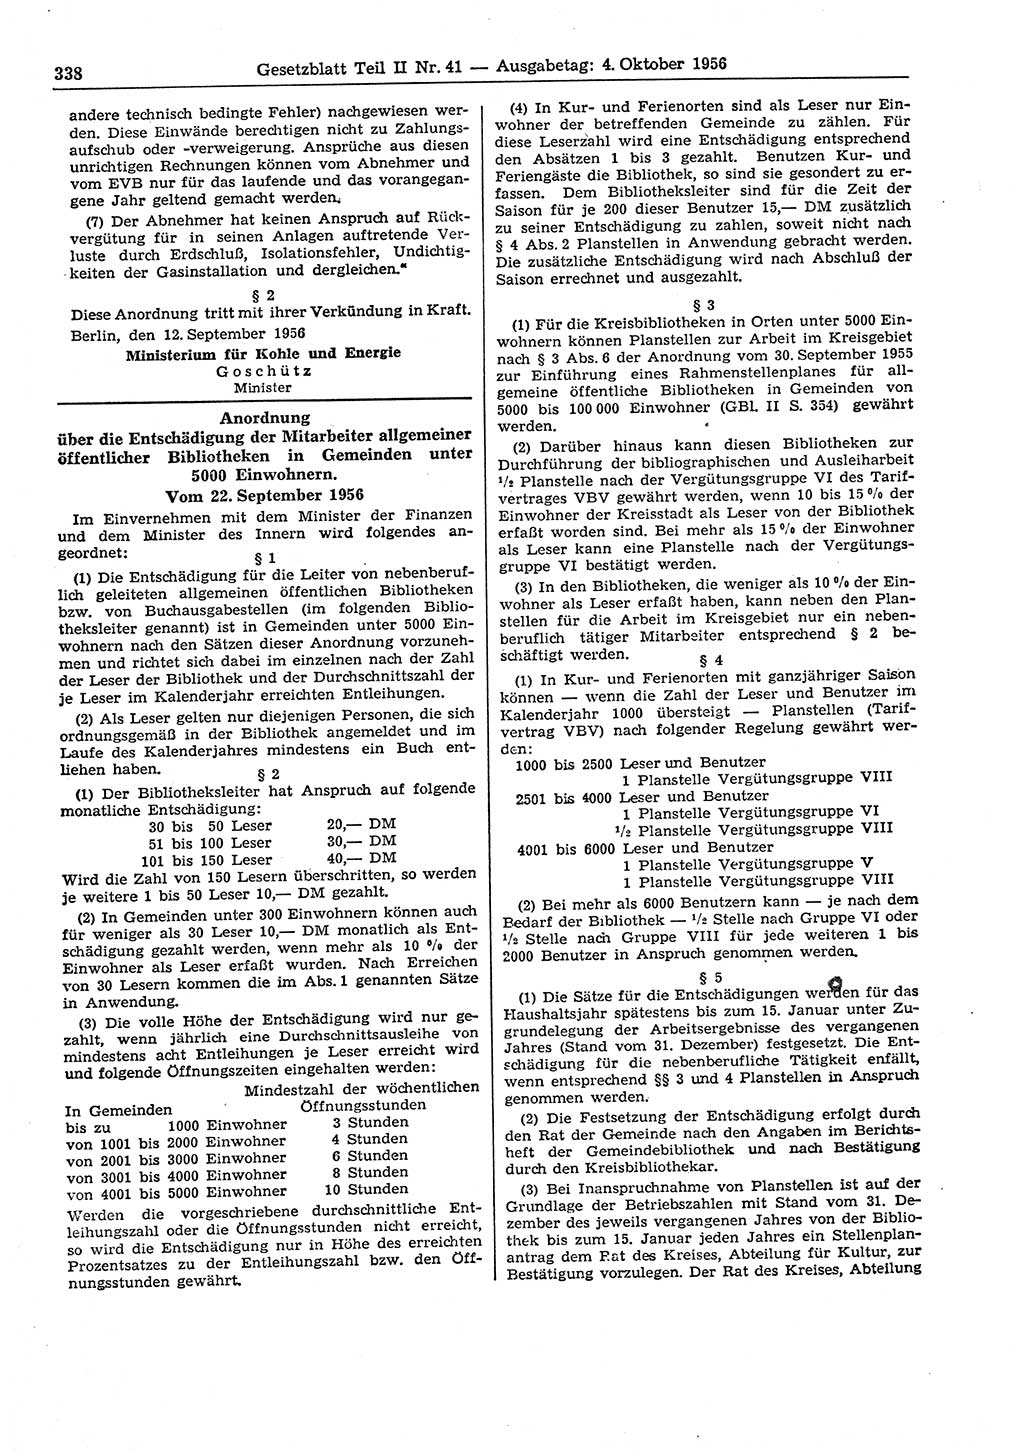 Gesetzblatt (GBl.) der Deutschen Demokratischen Republik (DDR) Teil ⅠⅠ 1956, Seite 338 (GBl. DDR ⅠⅠ 1956, S. 338)